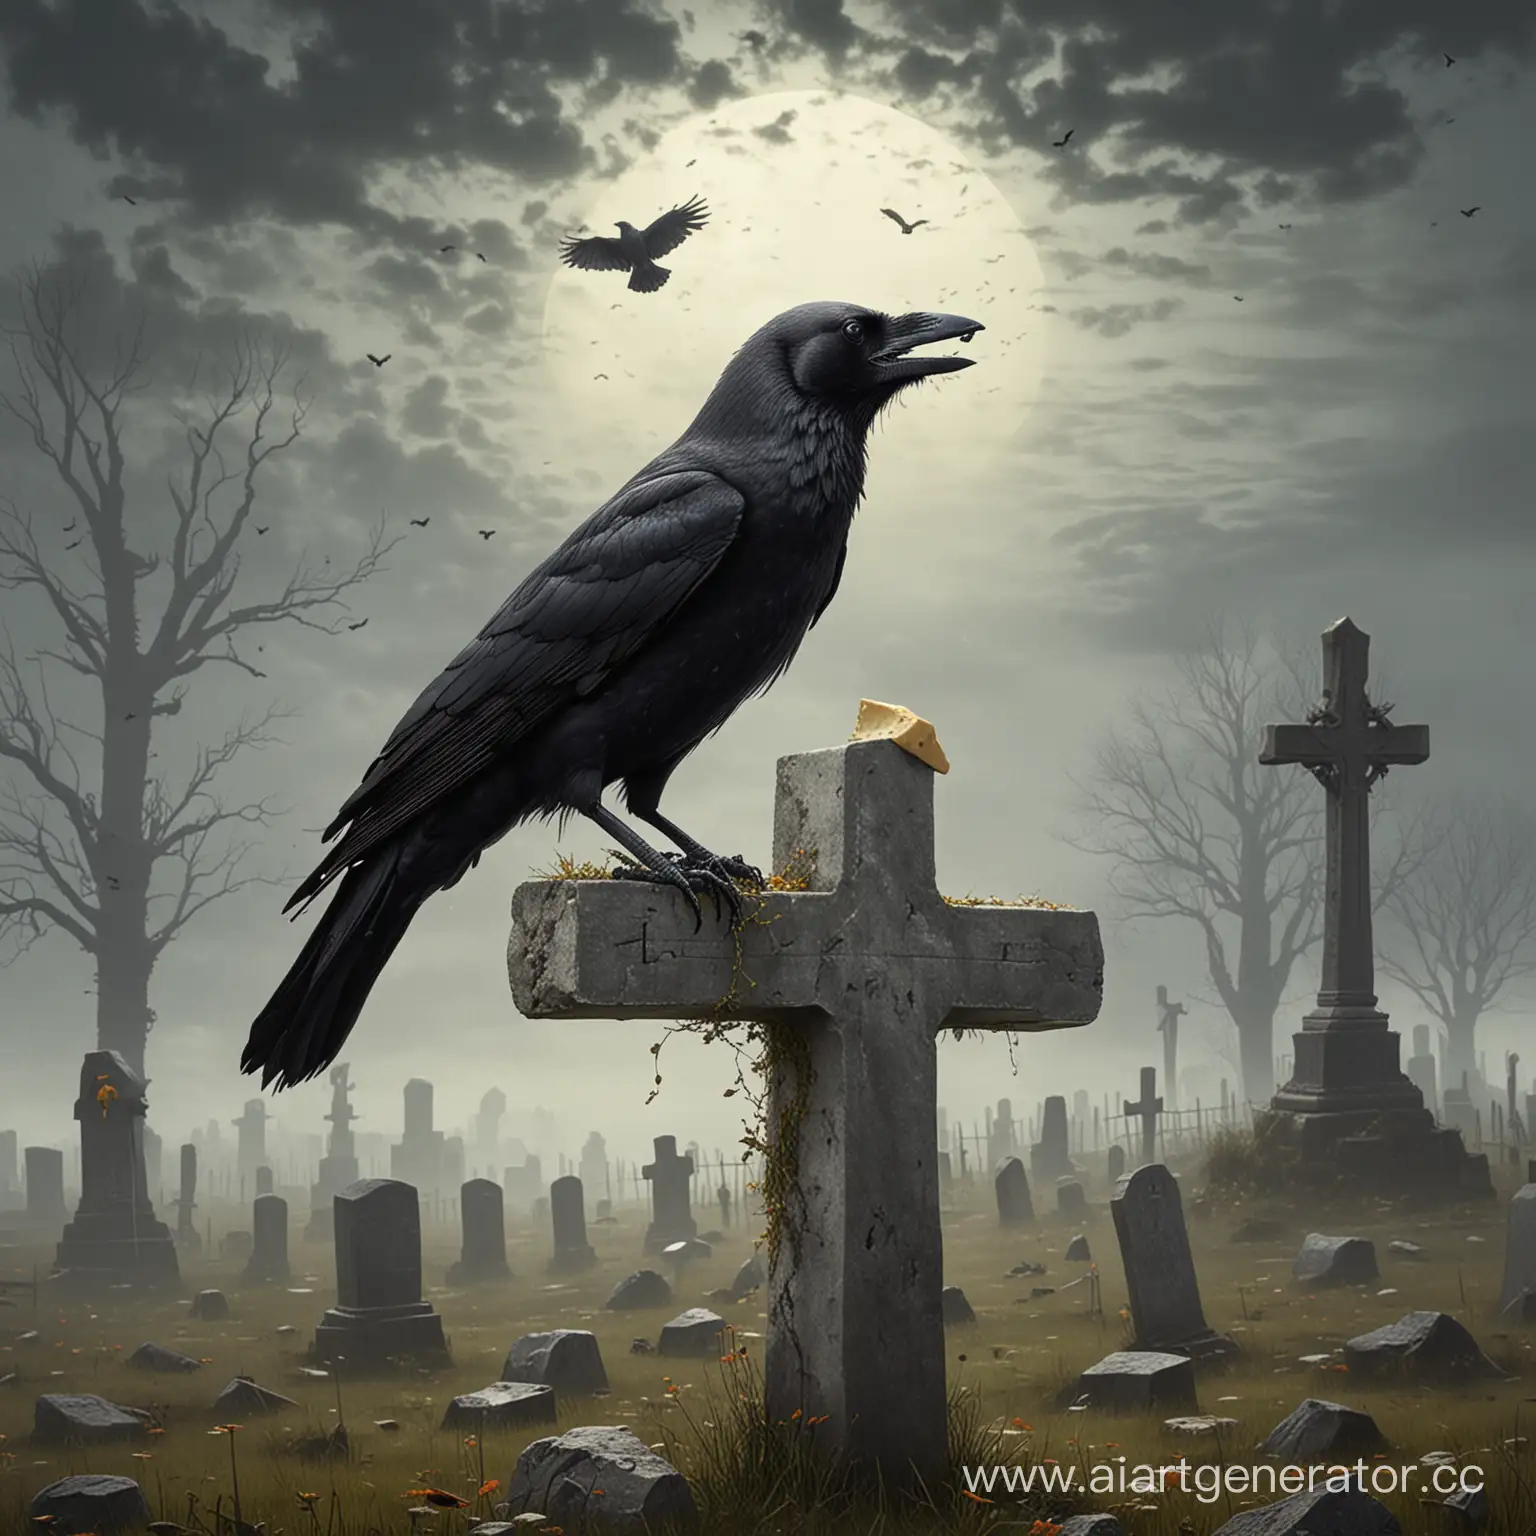 кладбище, ворона с куском сыра в клюве сидит на кресте, лиса снизу смотрит на ворону